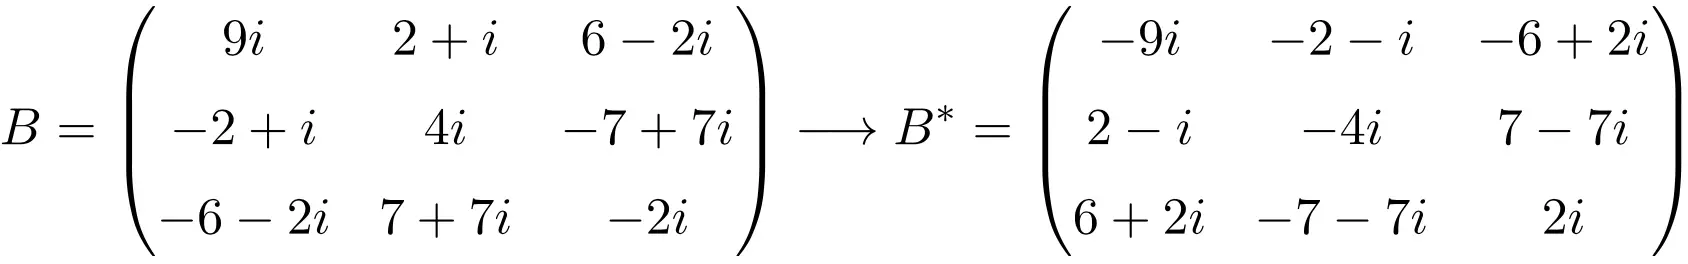 反埃尔米特或维度 3x3 的反埃尔米特矩阵